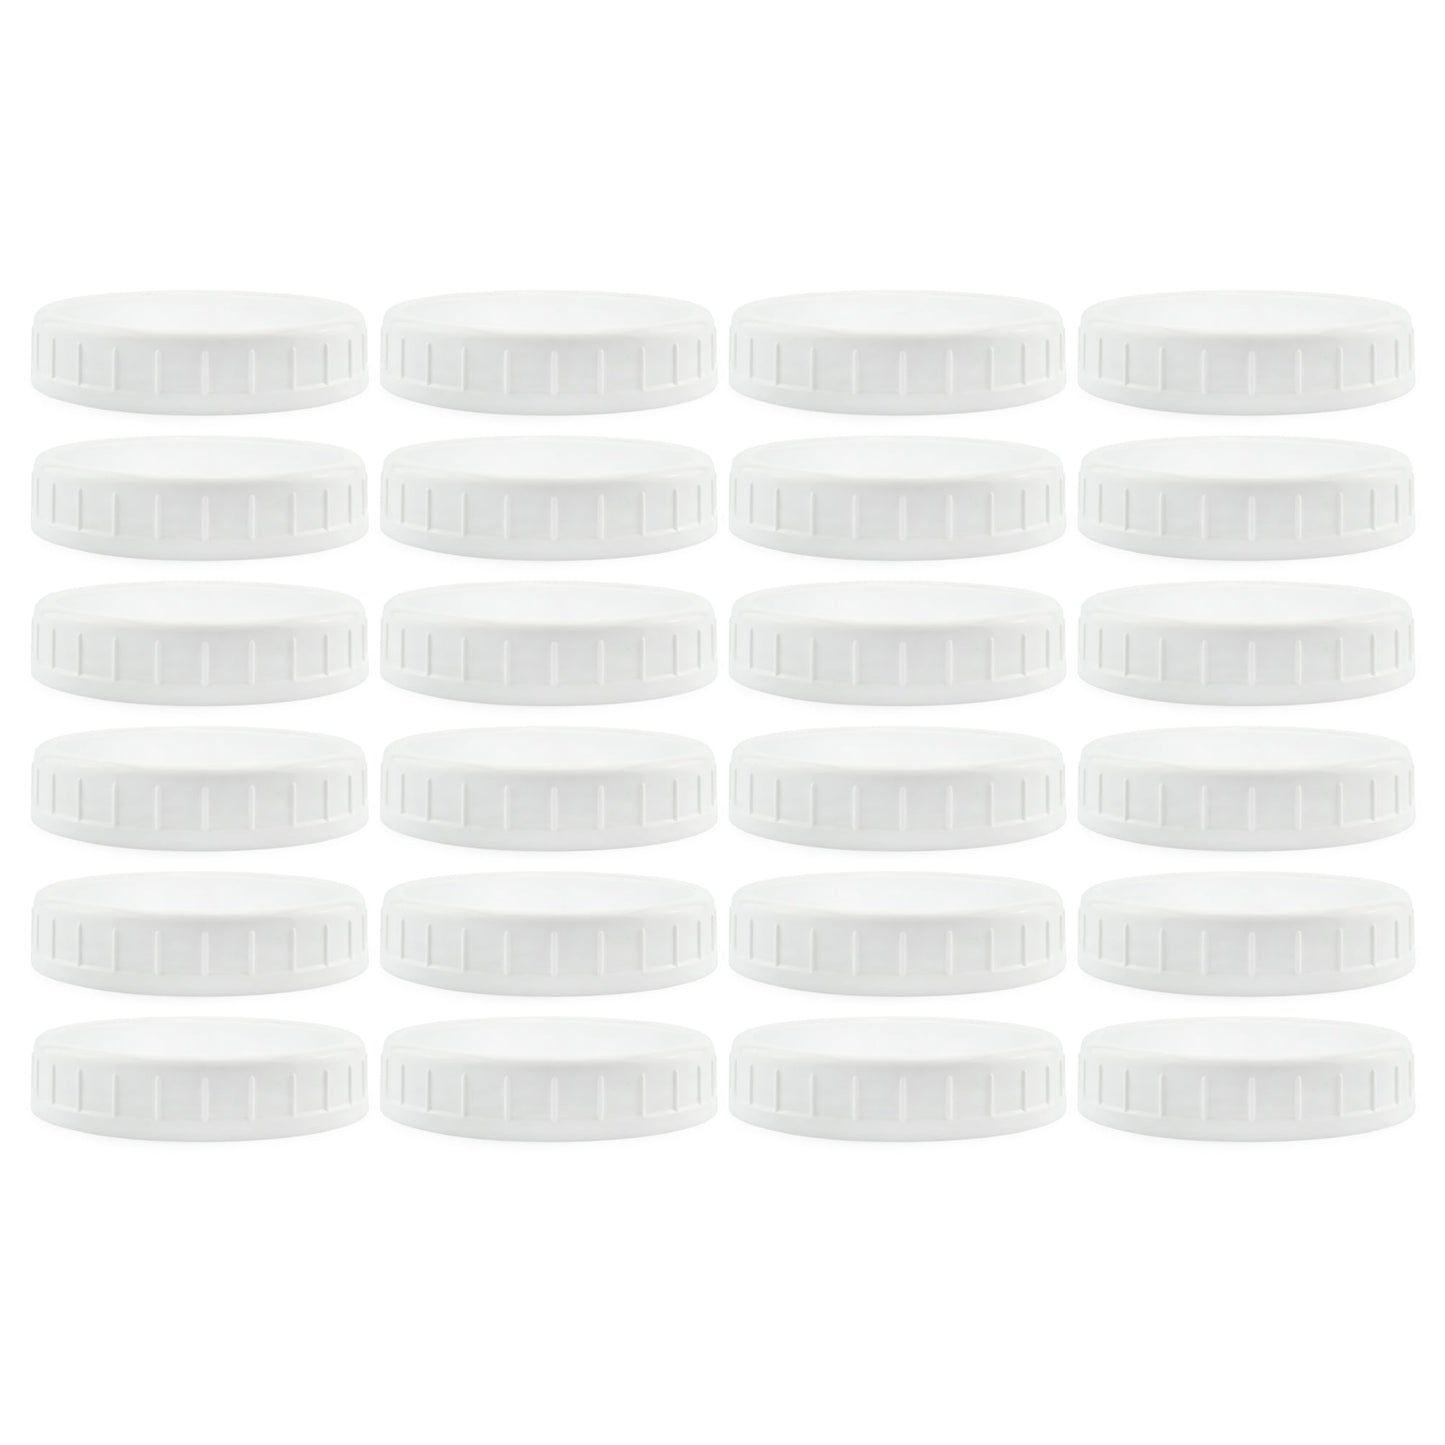 Two Dozen Wide Mouth Plastic Mason Jar Lids (24-Pack Bundle) - sh1184cb0rlh